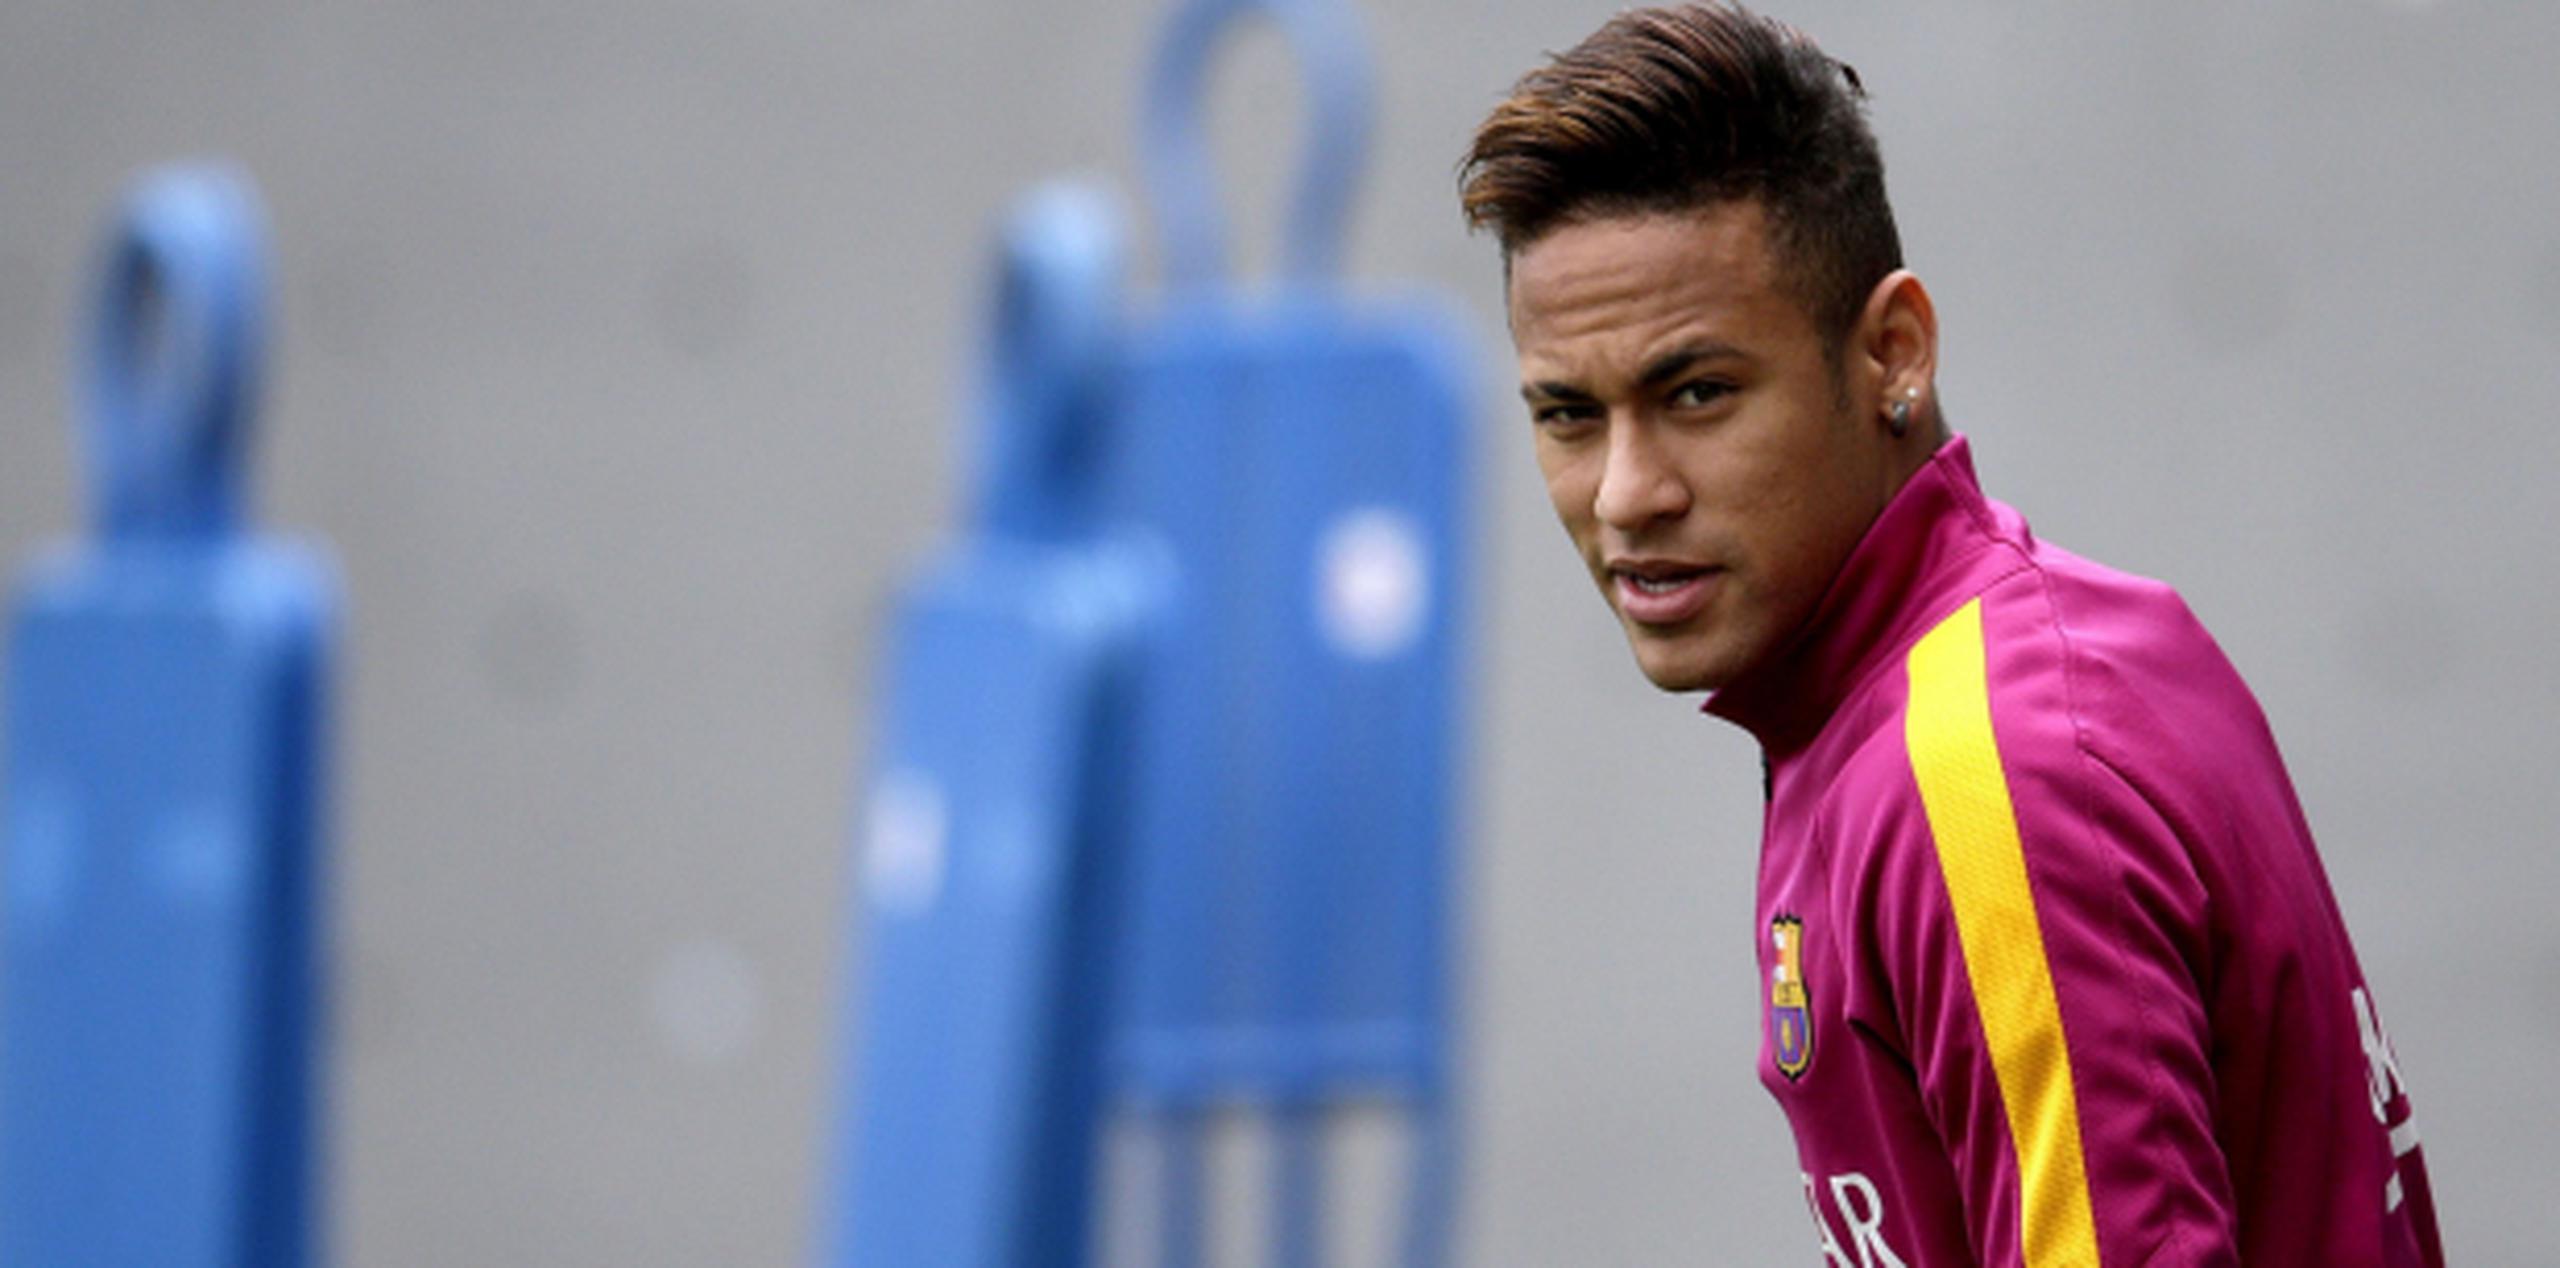 La semana pasada, Barcelona anunció que Neymar extendió su contrato con el club hasta 2021. (Agencia EFE)